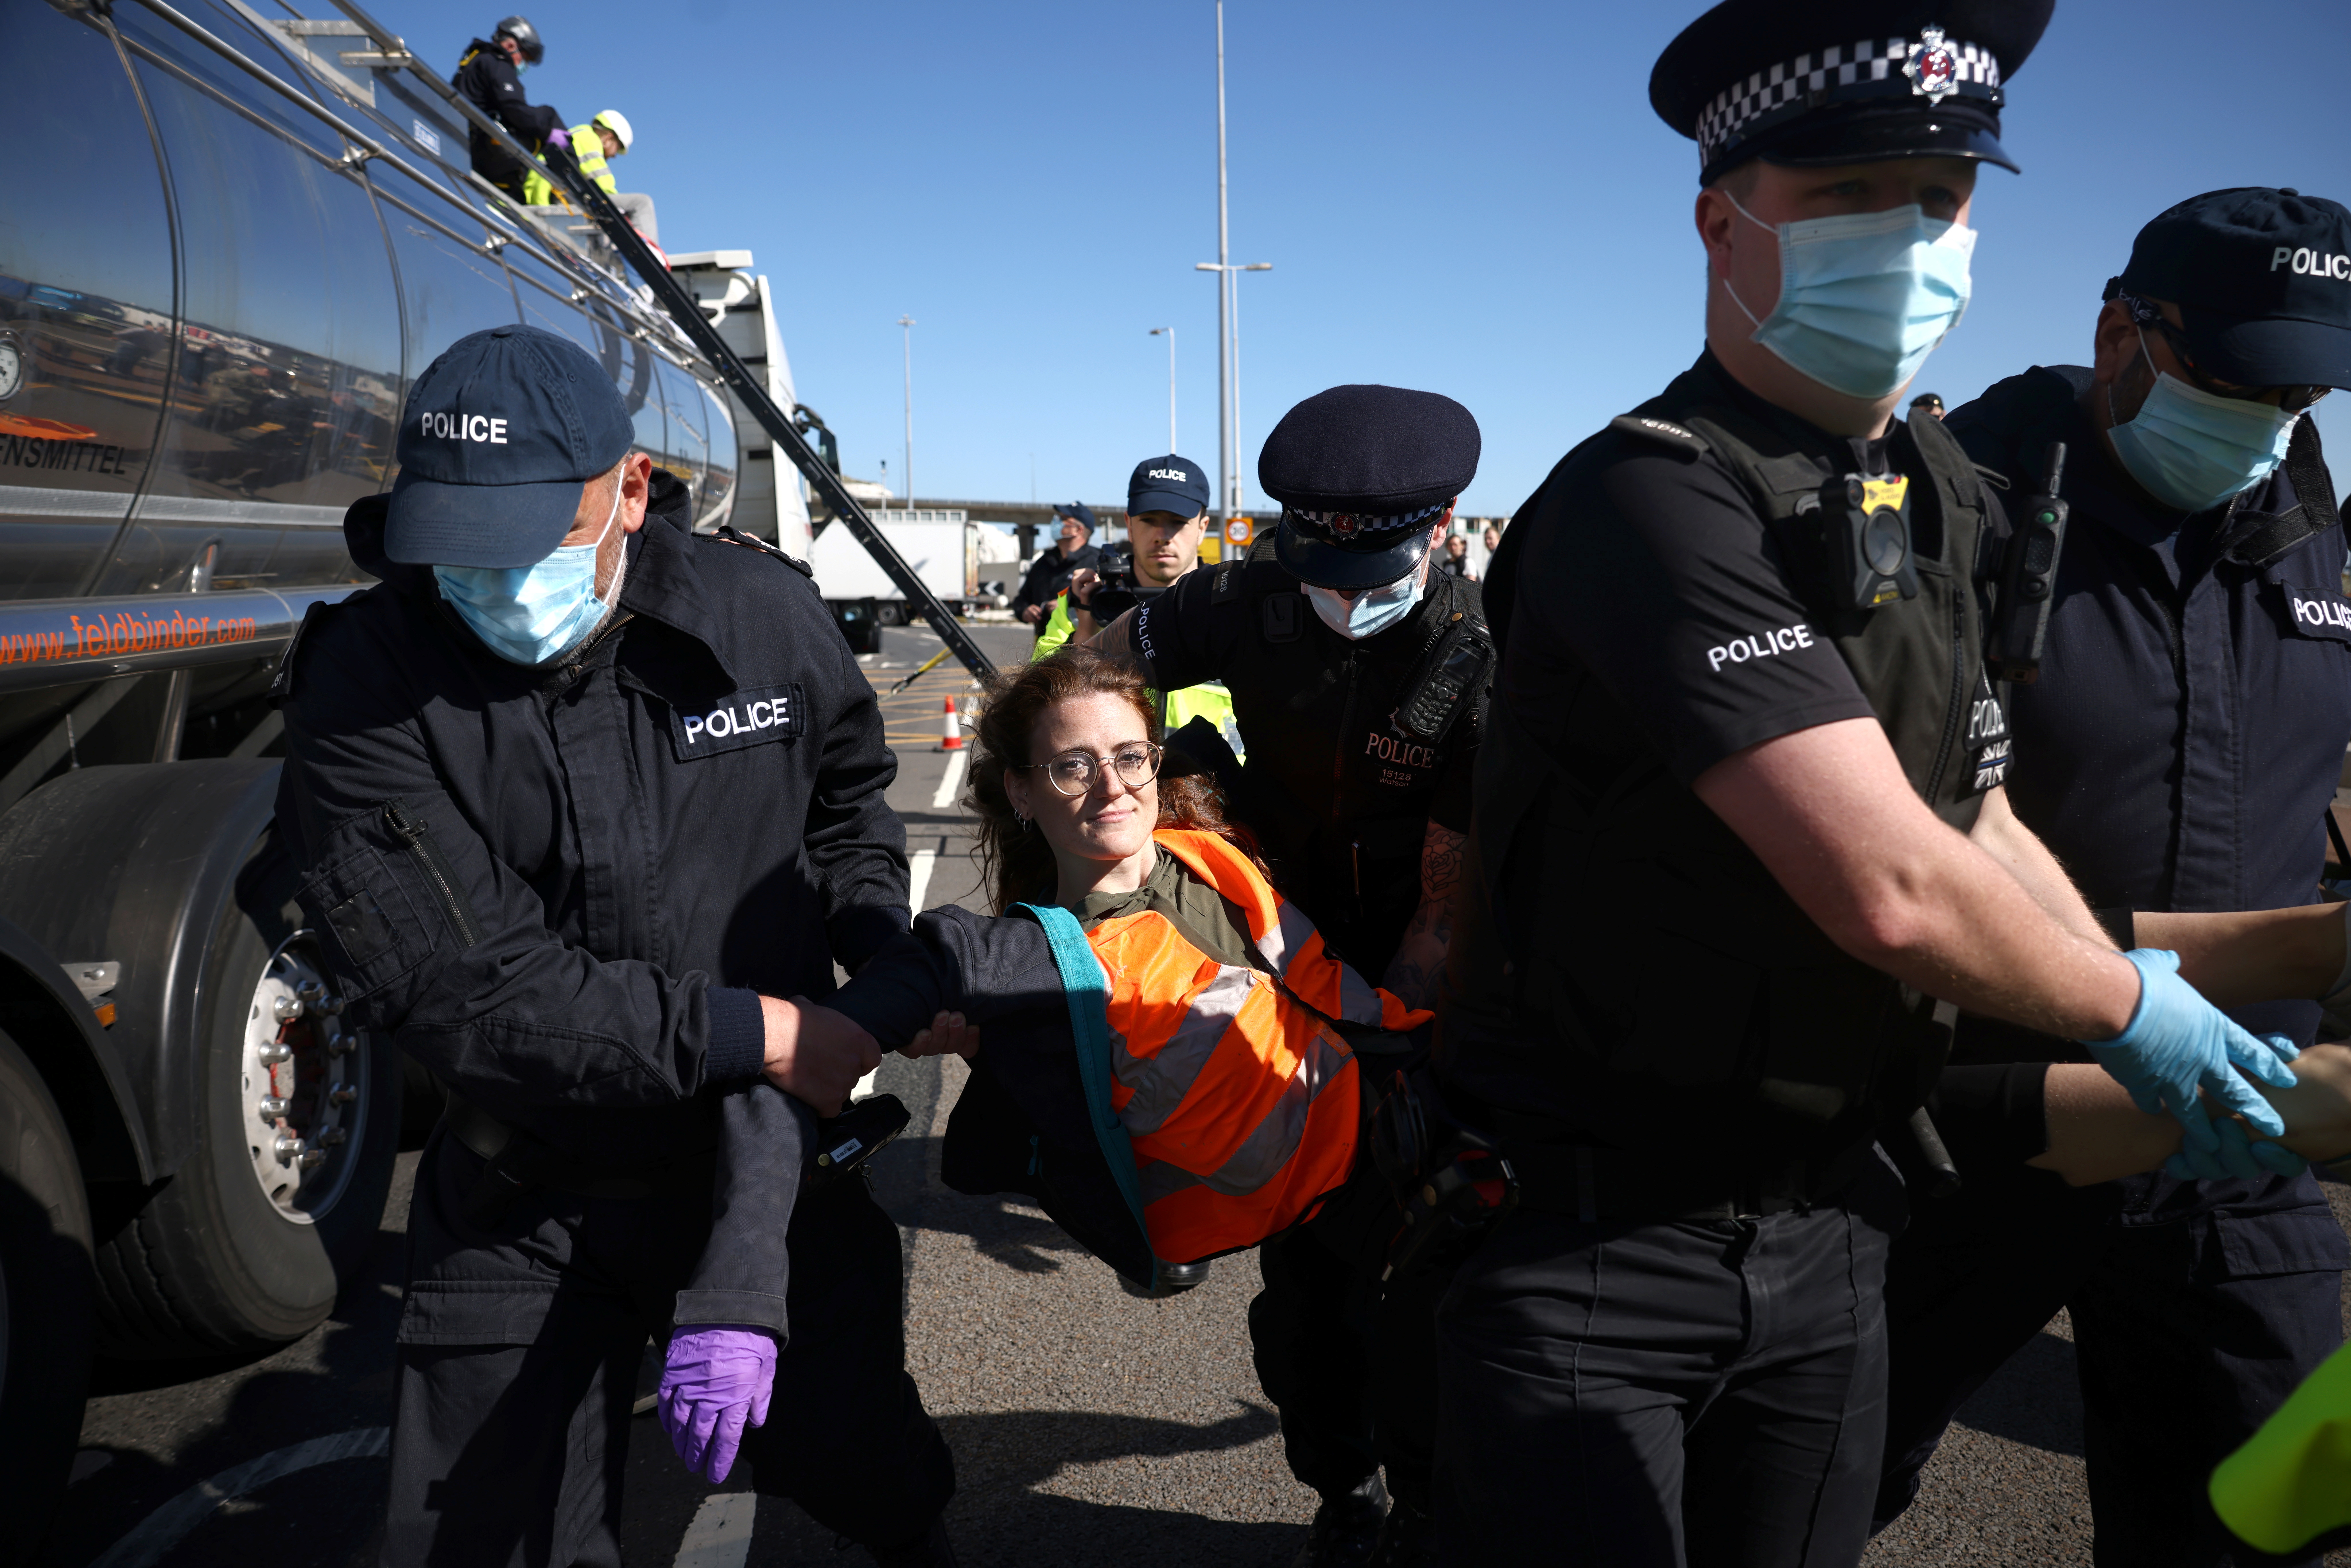 Unos 40 manifestantes habían cortado la autopista A20 cerca del principal puerto británico en el Canal de la Mancha (Foto: REUTERS/Henry Nicholls)